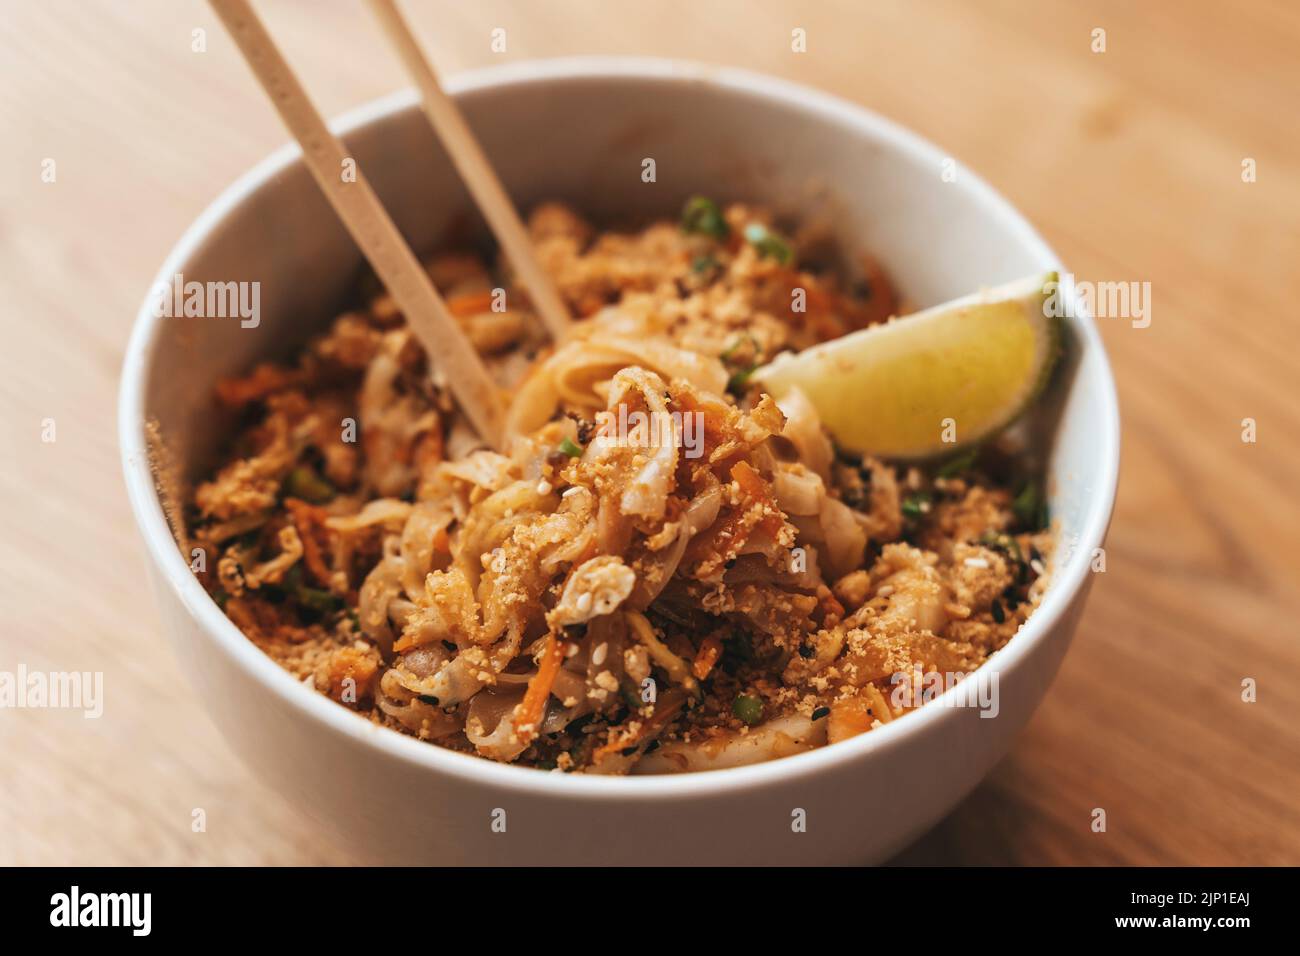 Bloc de fideos tailandés thai tazón de fondo. Fideos de arroz tradicionales con camarones y mariscos. Concepto de comida asiática. Fotografía de alta calidad Foto de stock